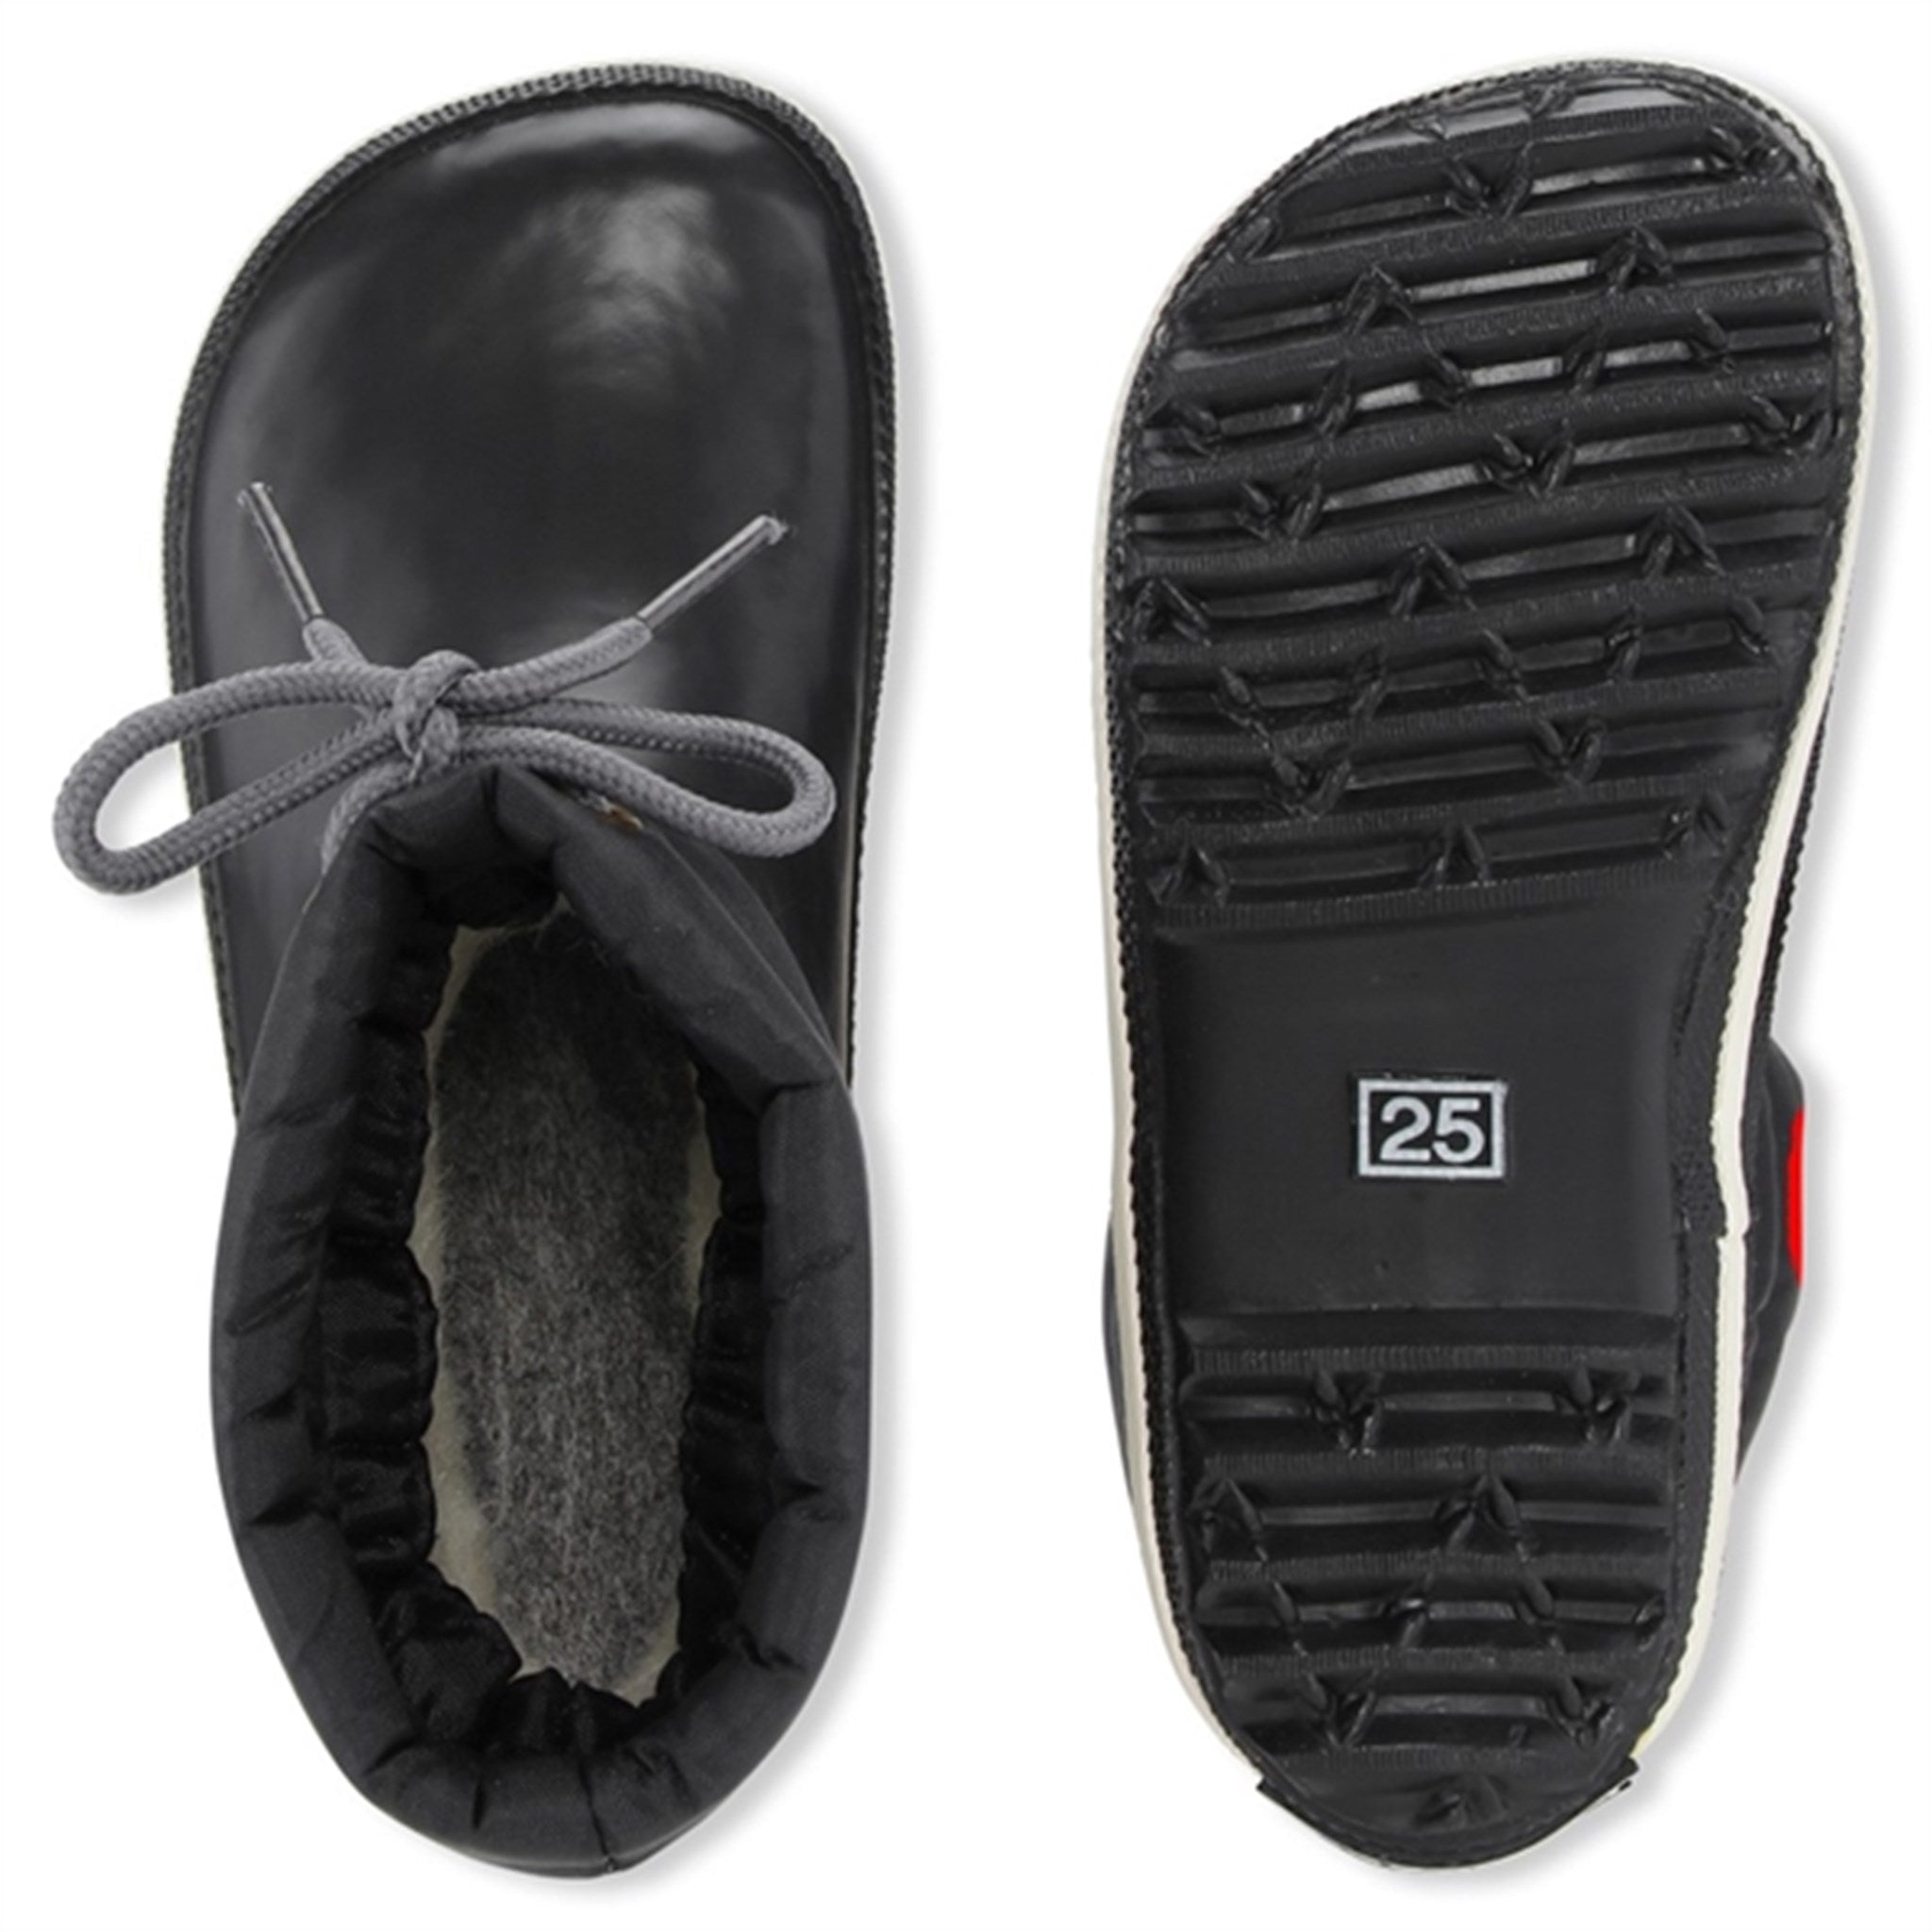 Bundgaard Cirro Low Warm Rubber Boots Black 2